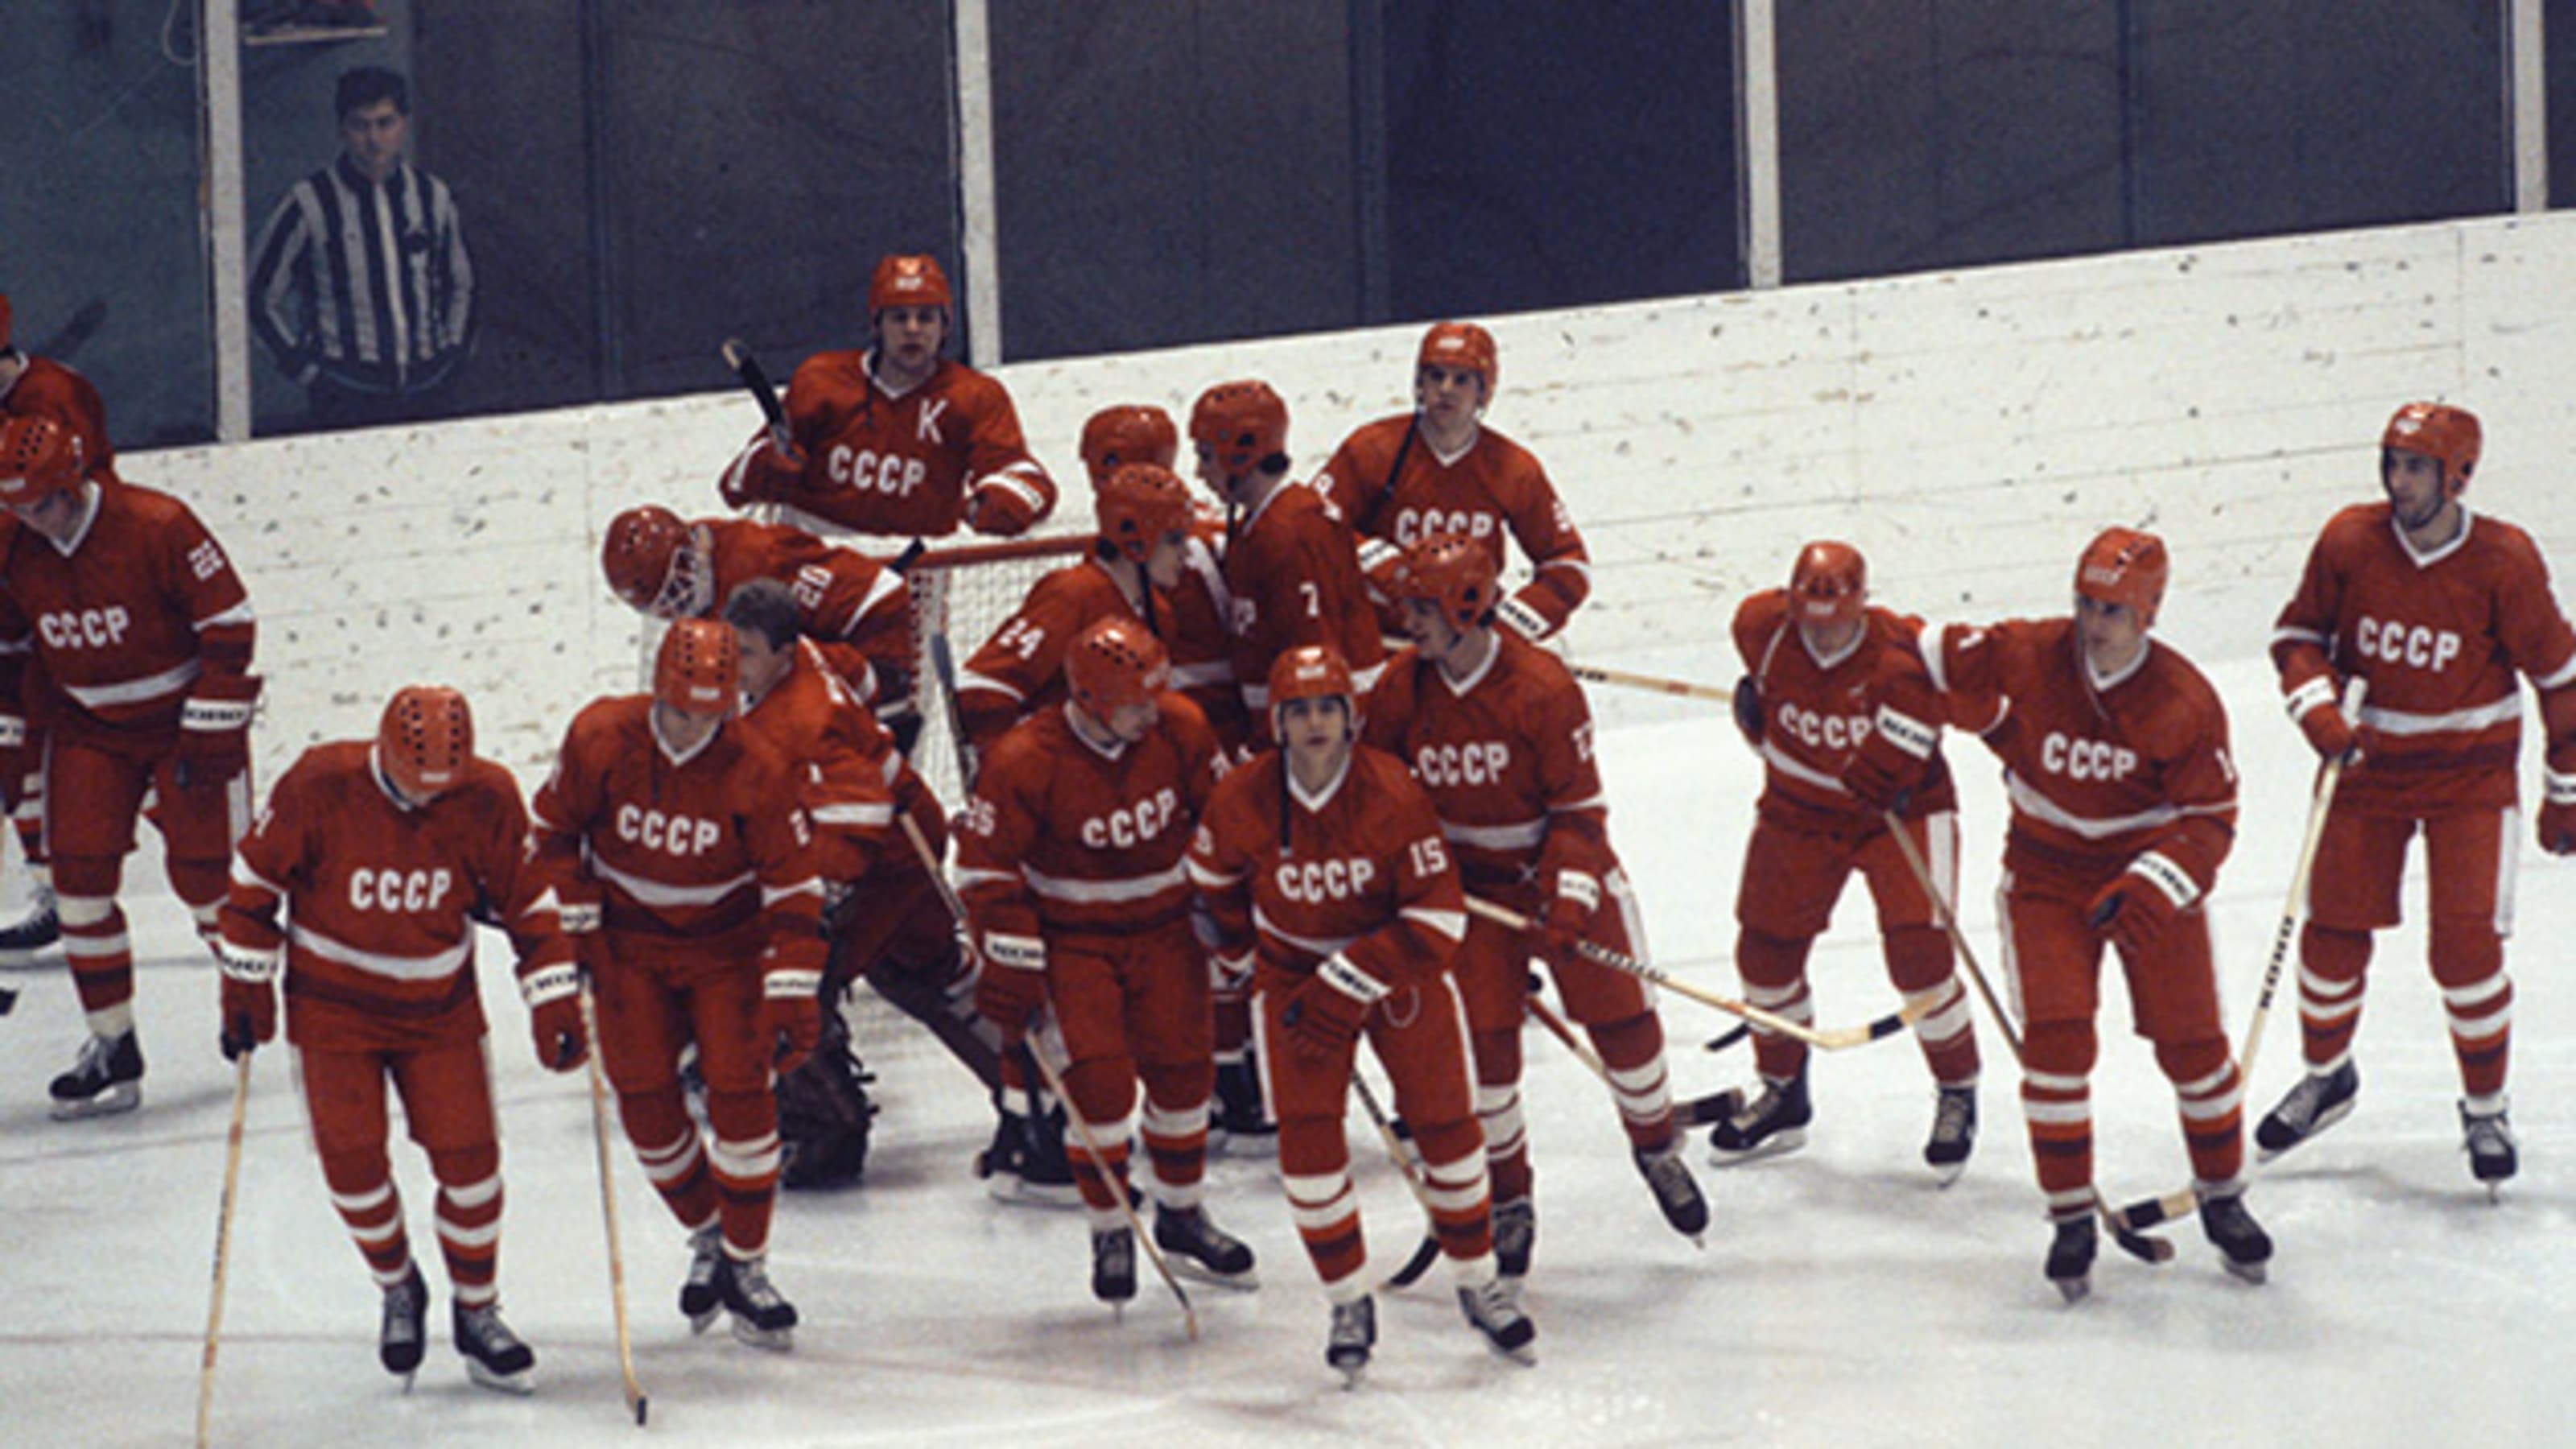 О хоккейном матче сборной советского союза